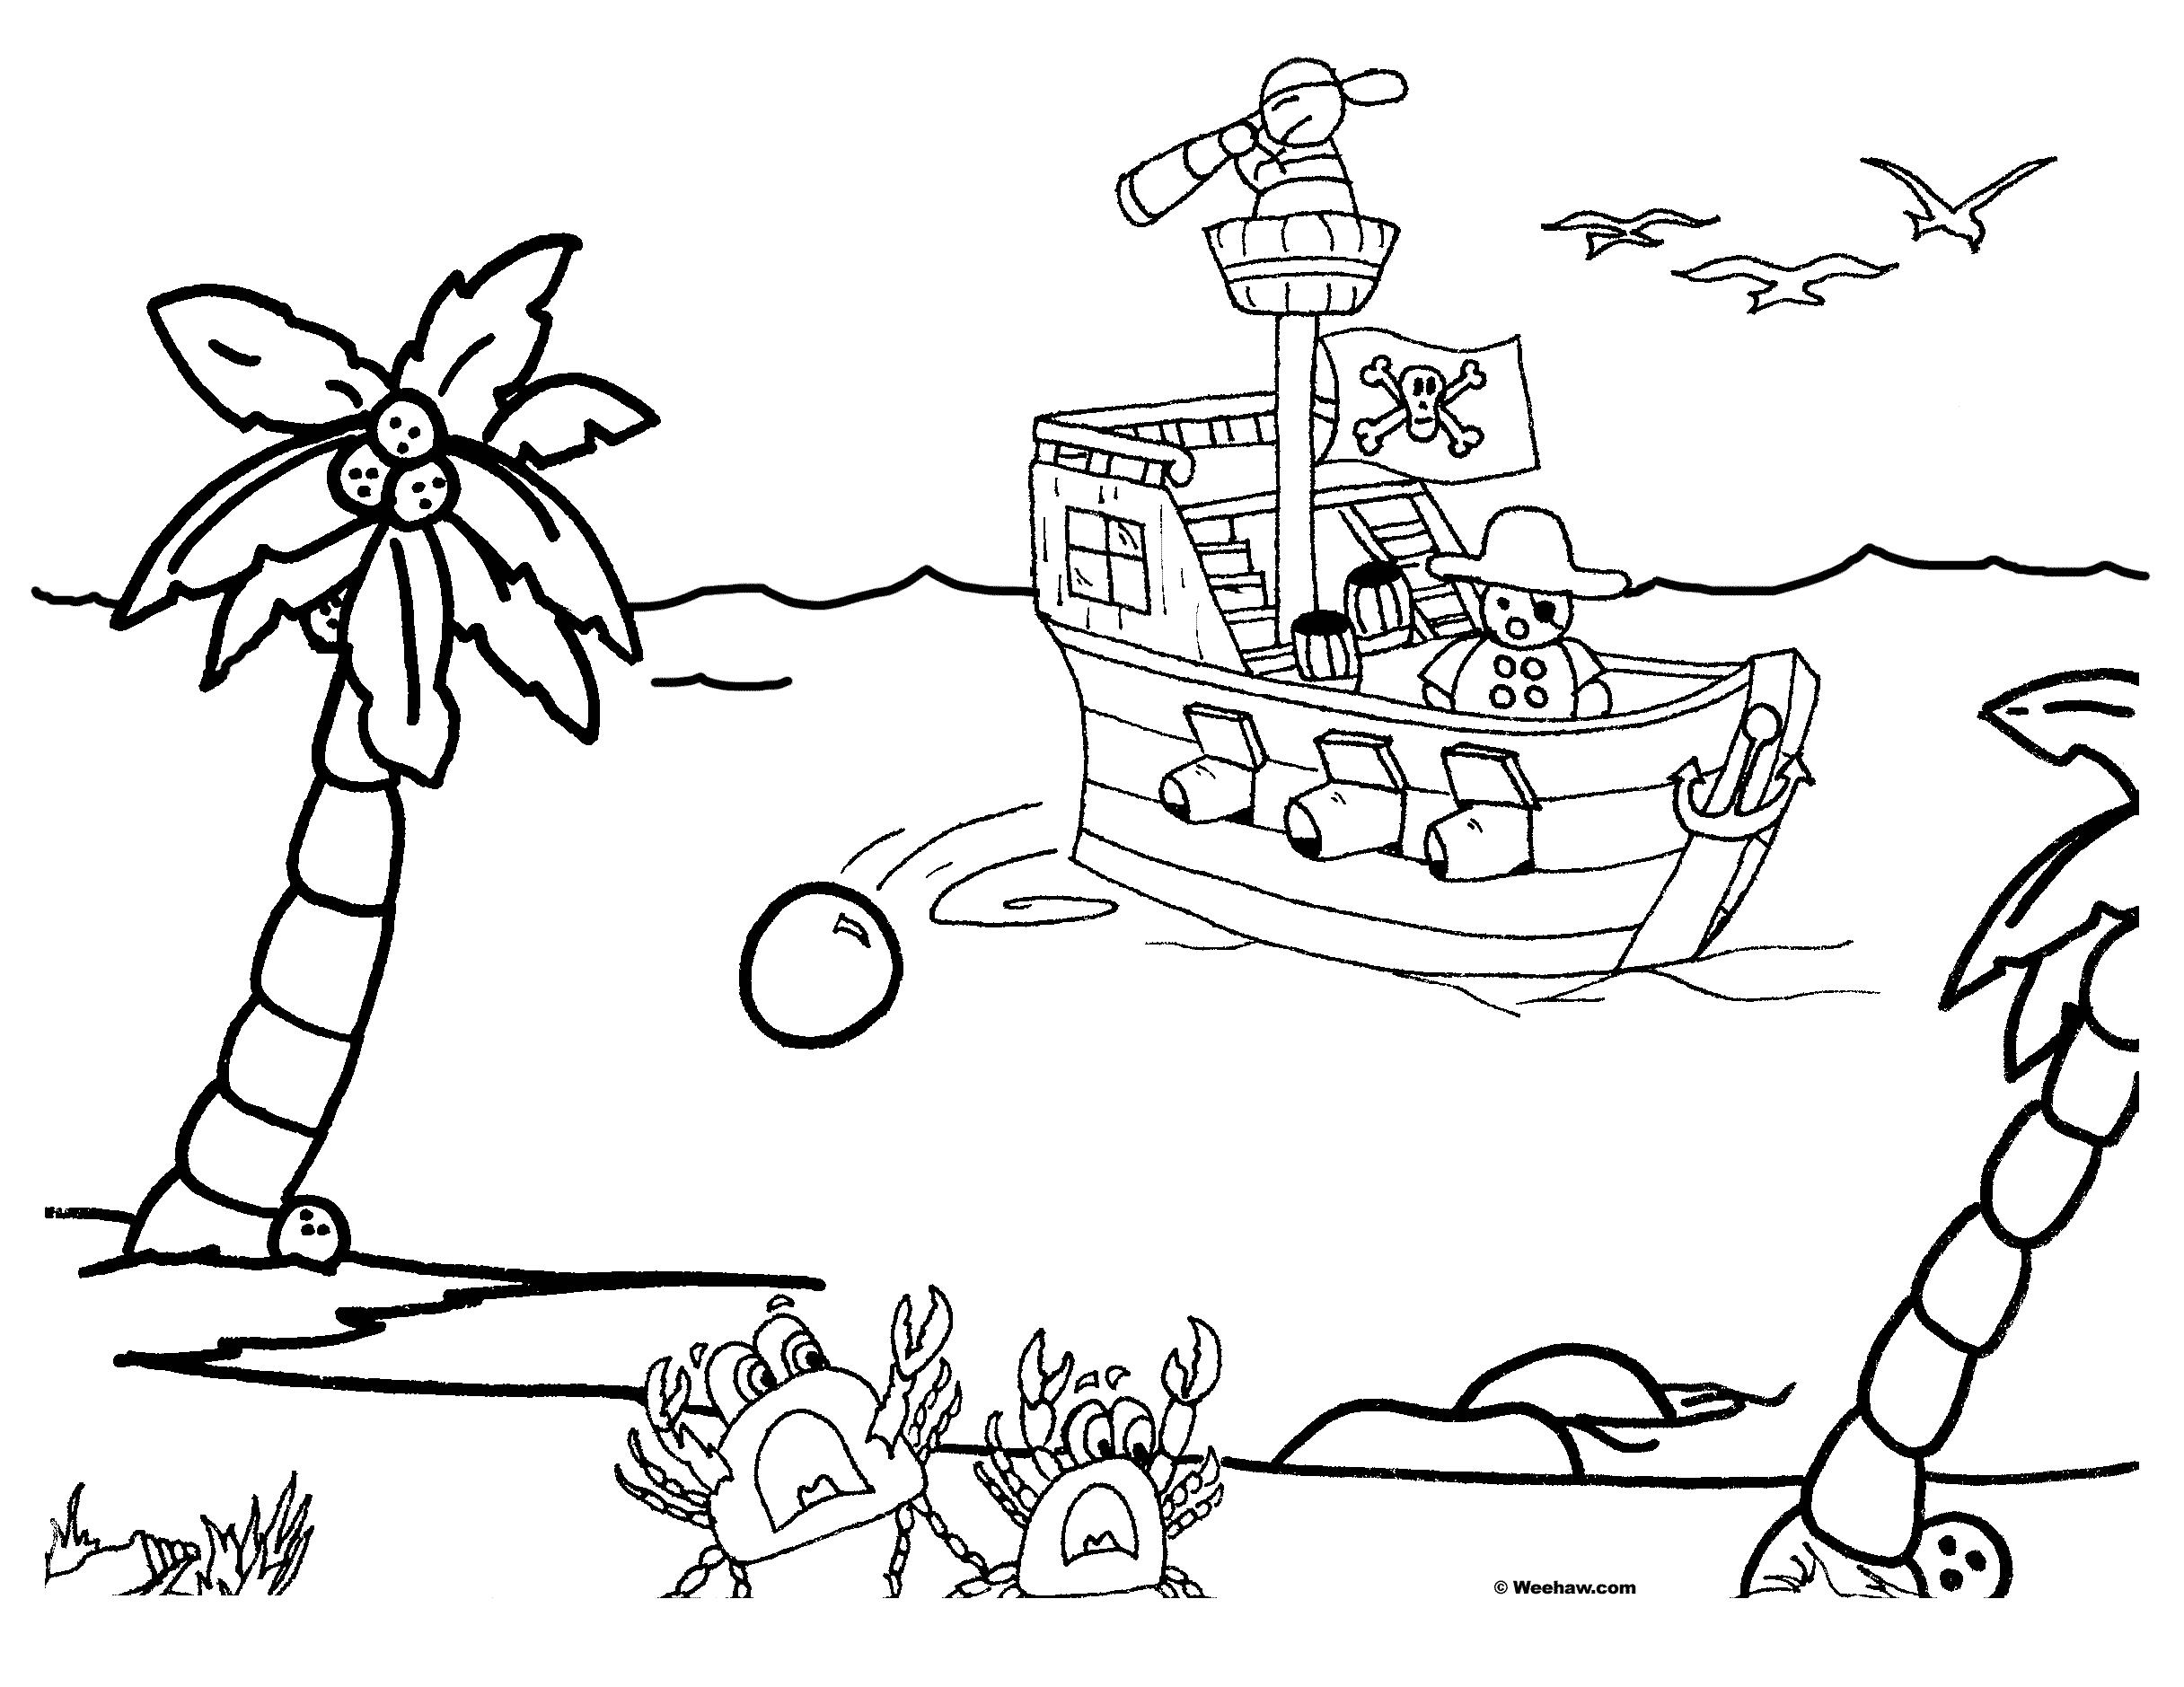  Корабль пиратов возле острова, крабы, пальмы, птицы, песок, море